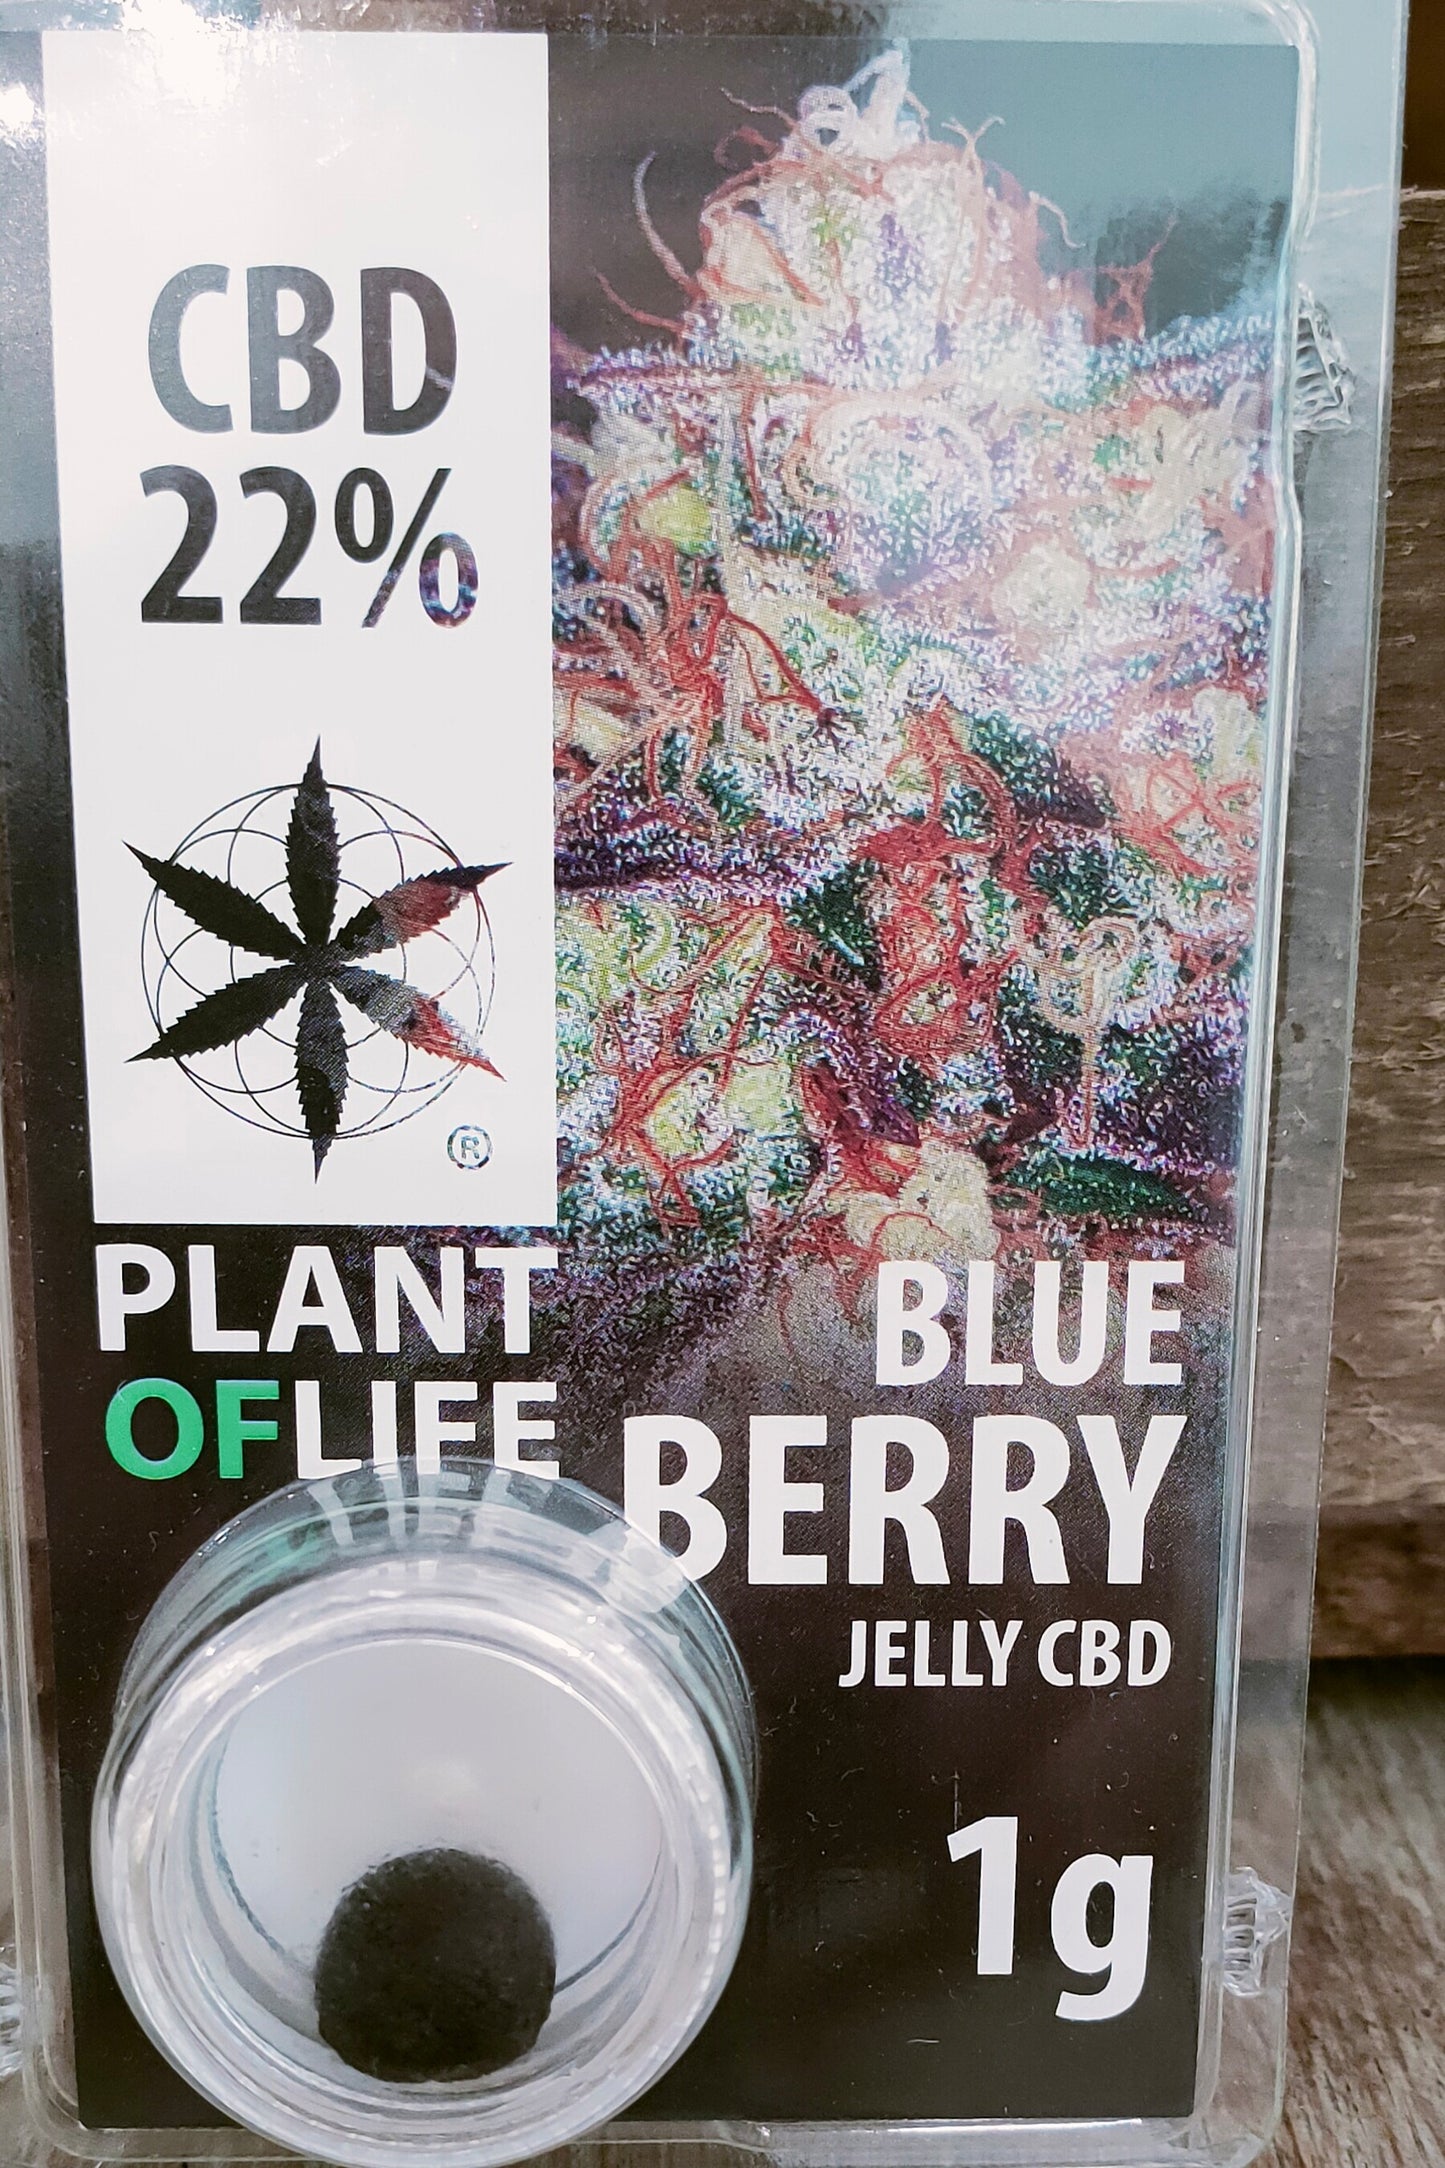 CBD Jelly 22% 1g